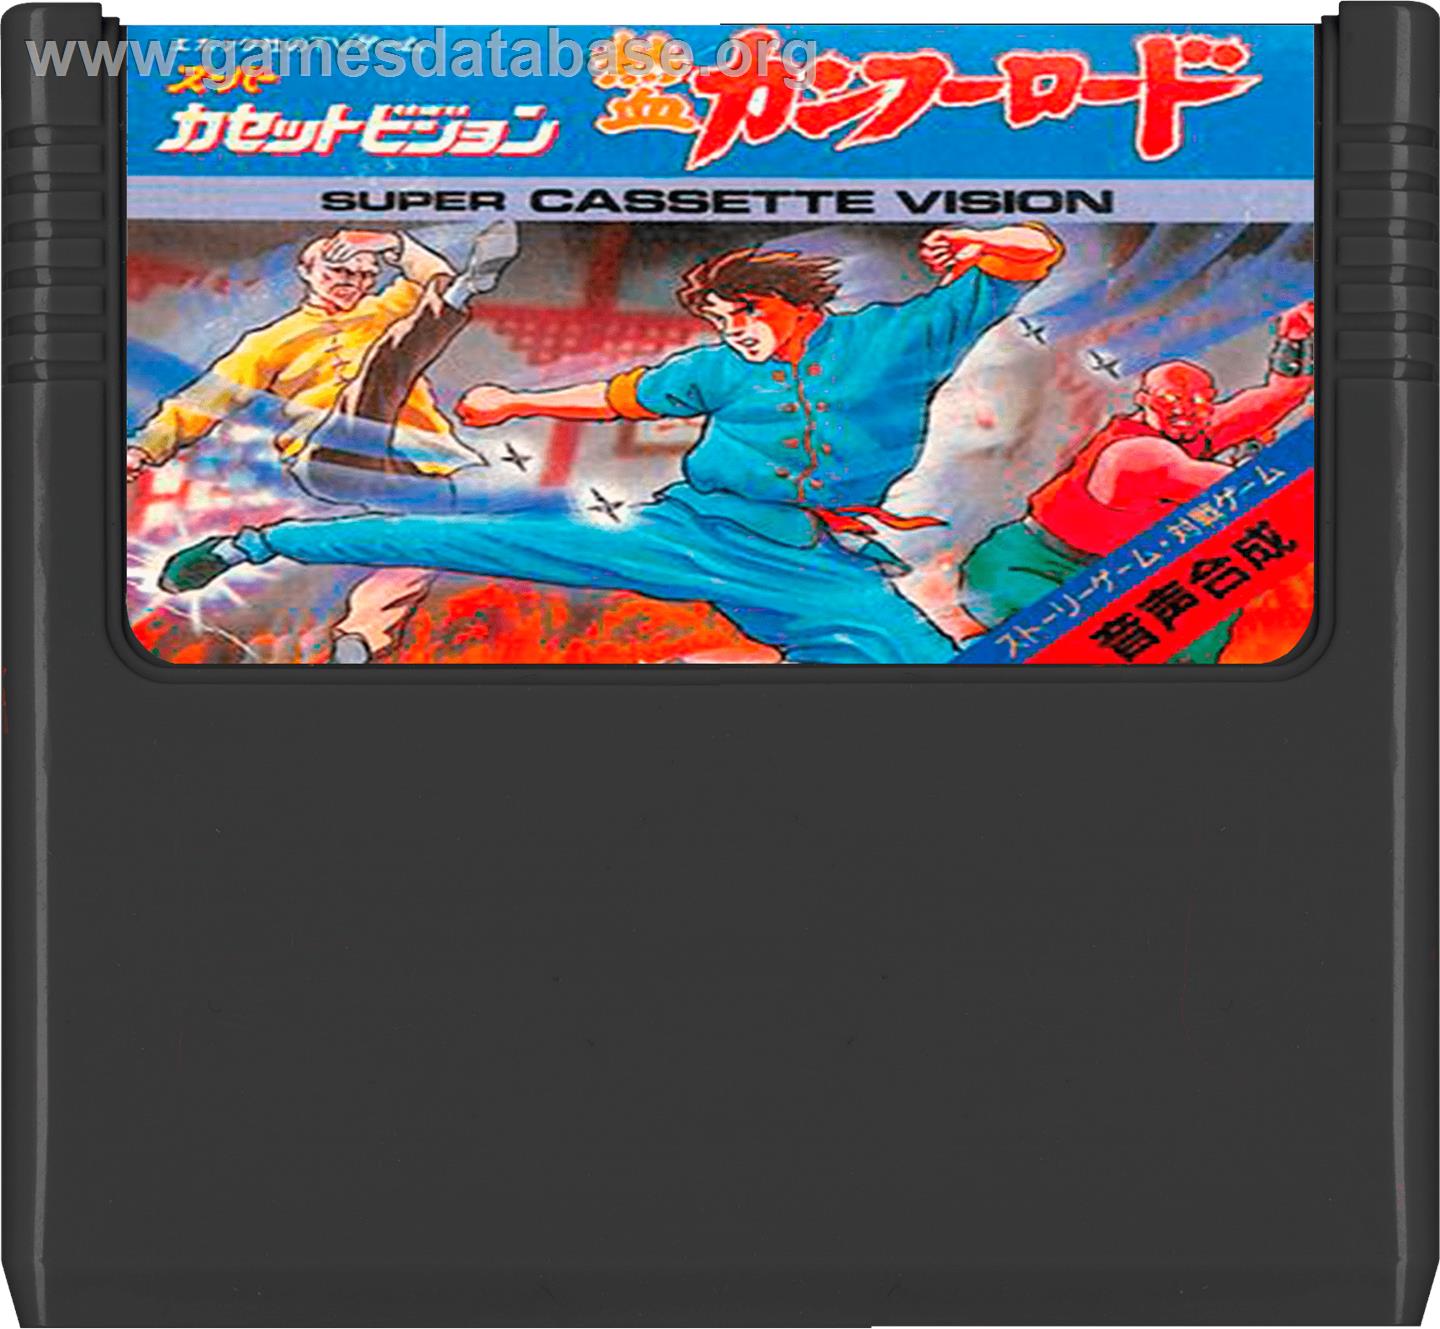 Kung Fu Road - Epoch Super Cassette Vision - Artwork - Cartridge